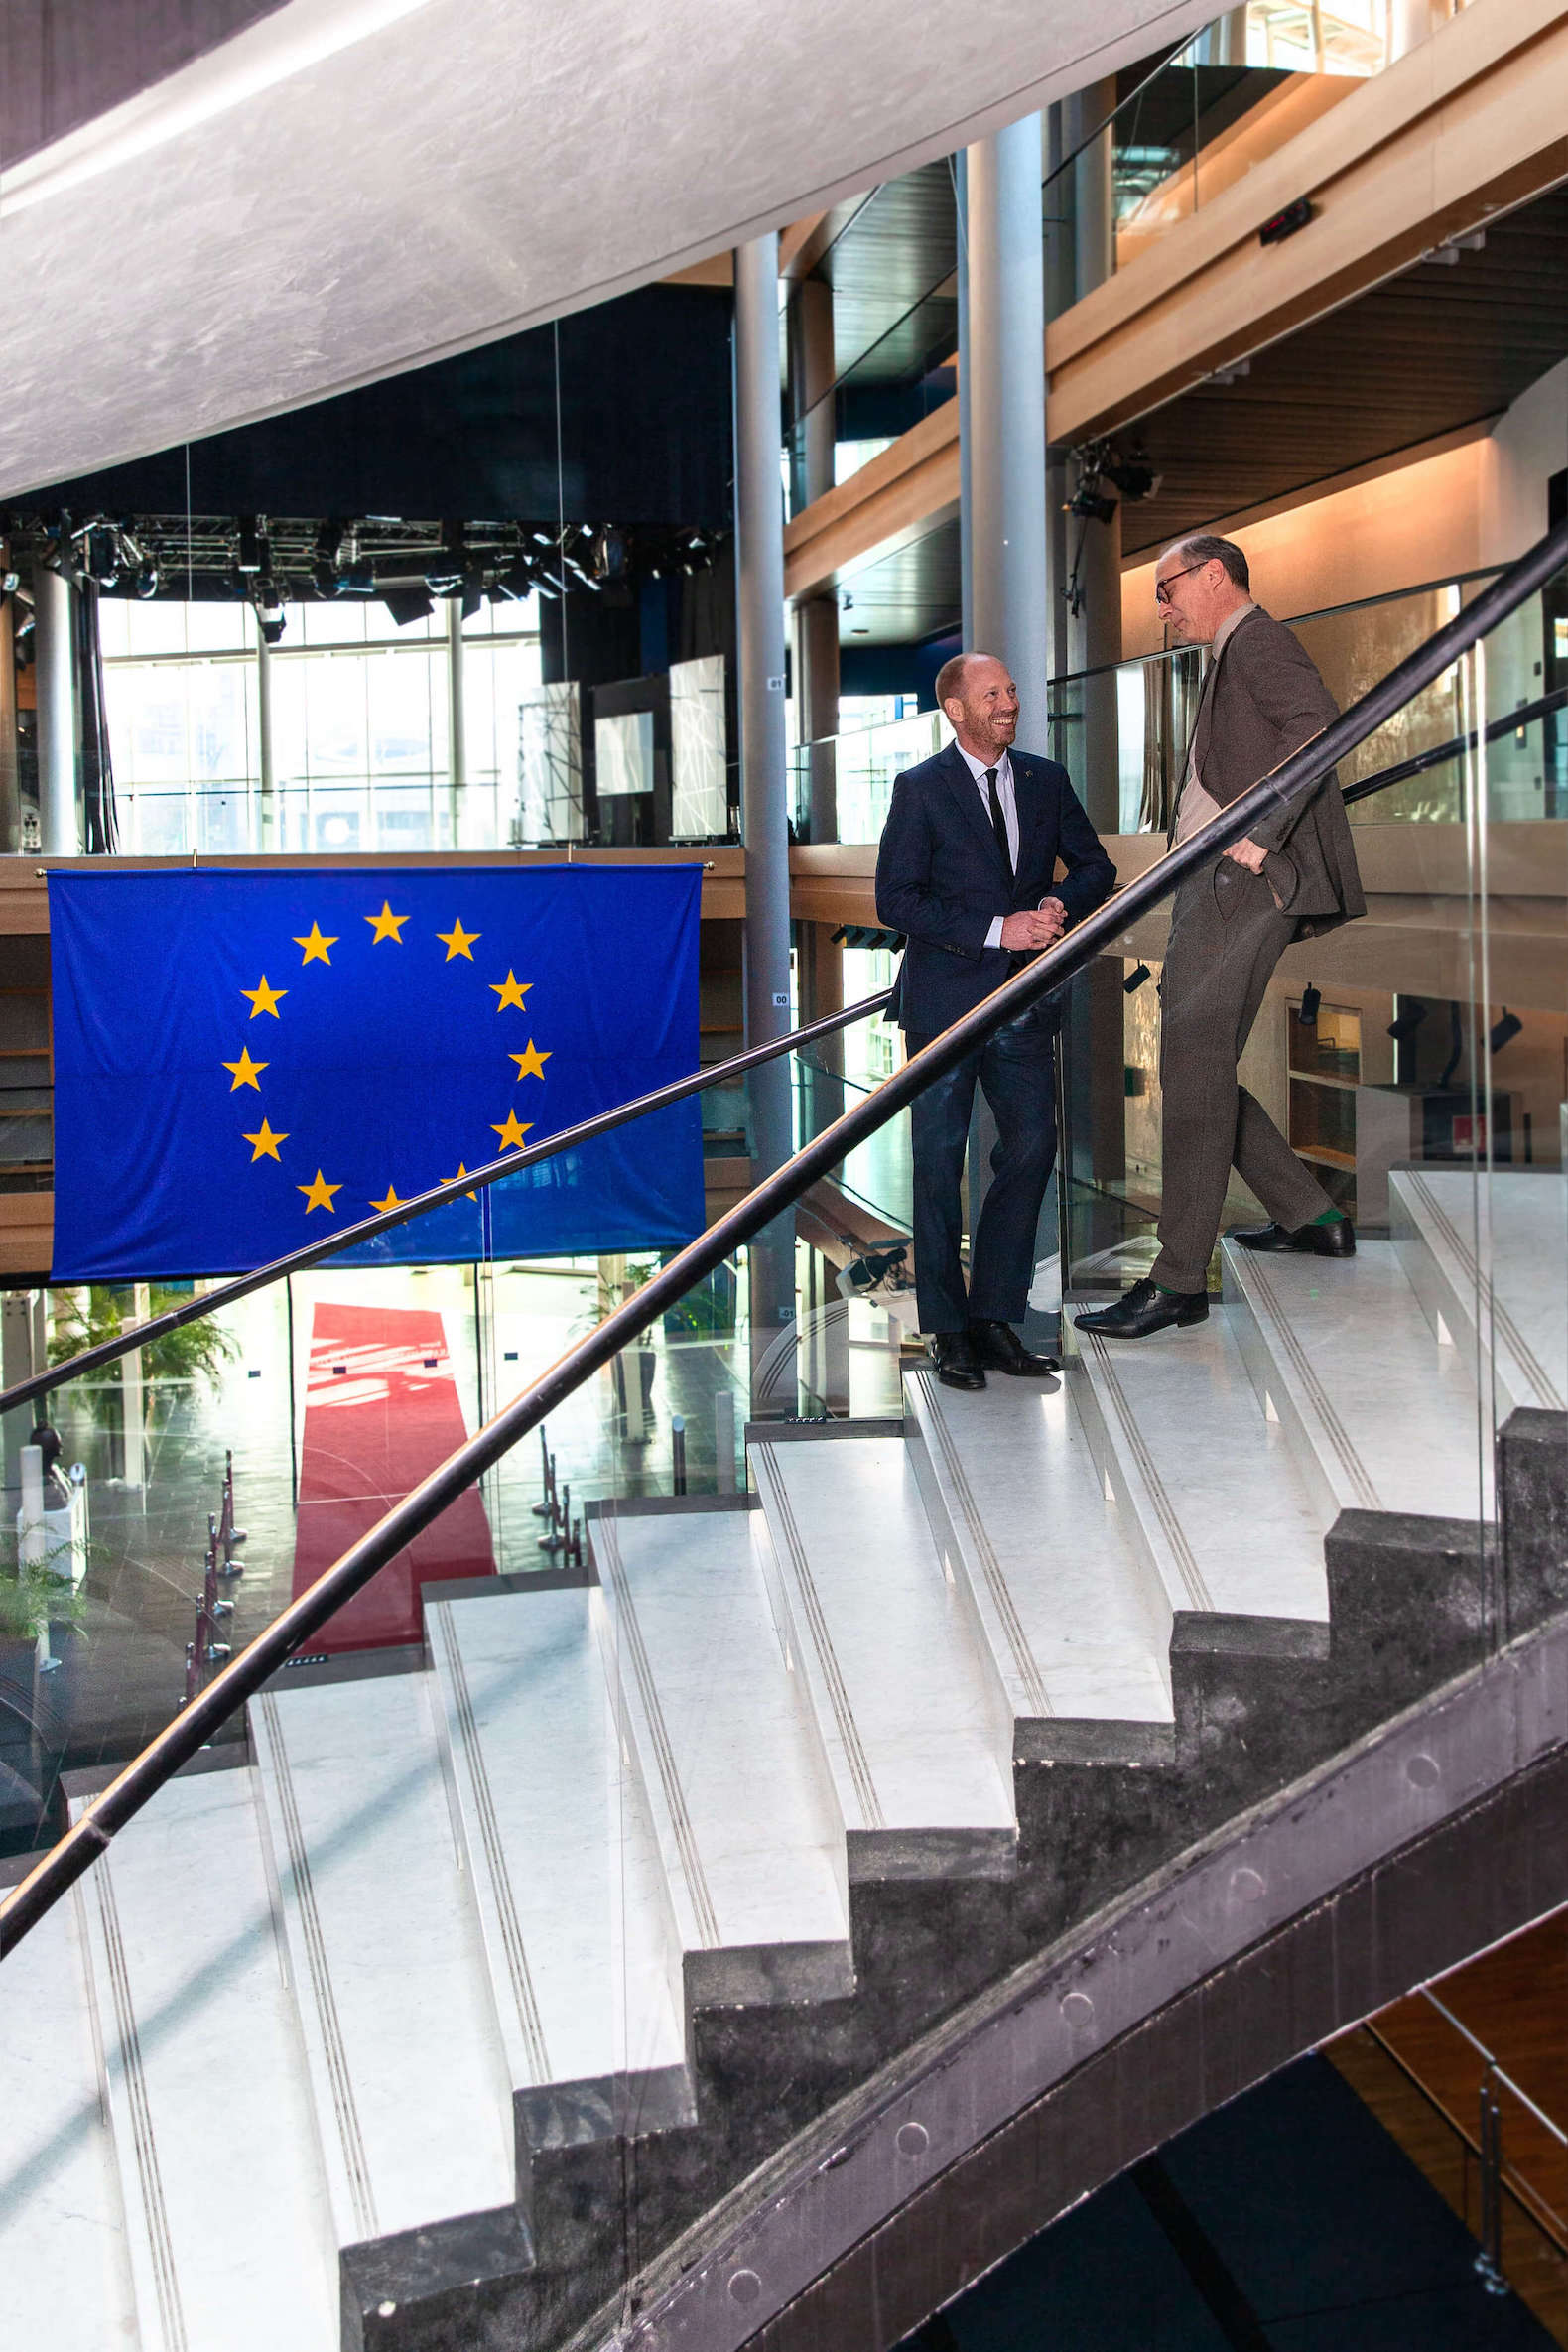 Zwei Männer unterhalten sich auf einer Treppe, im Hintergrund hängt eine EU-Flagge